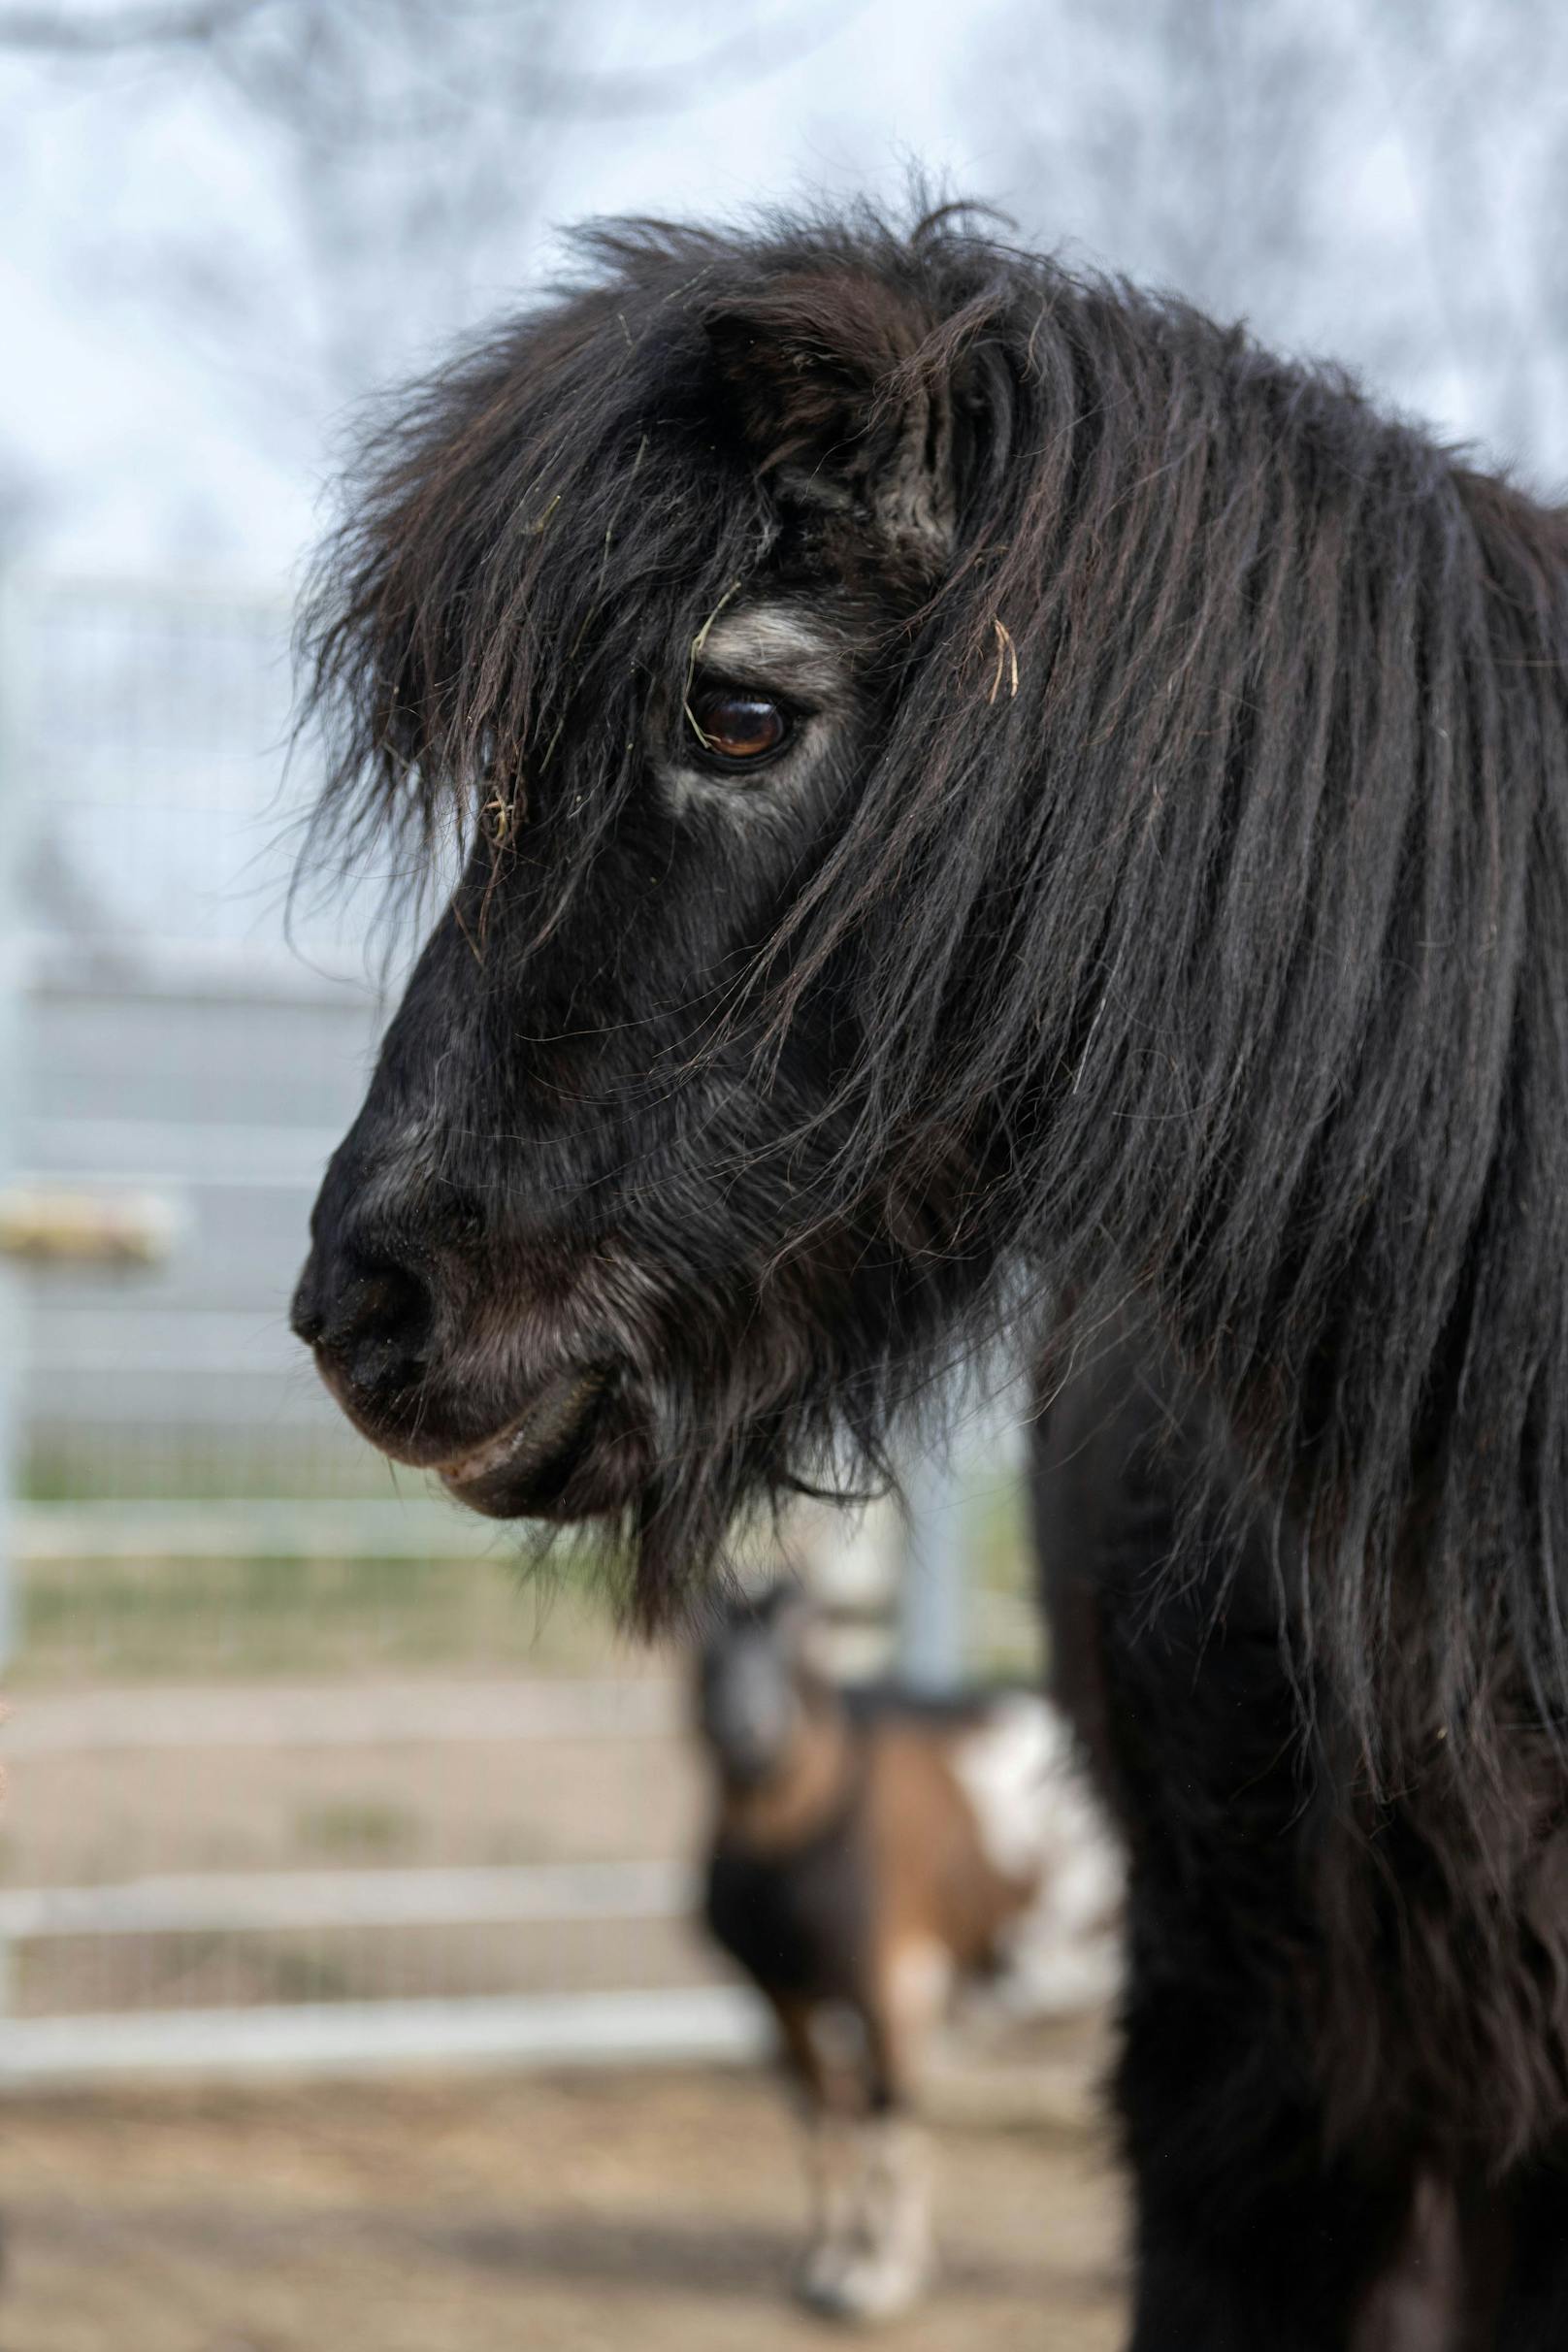 Pony "Bubi" war der beste Freund der Ziege und starb vor knapp vier Monaten.